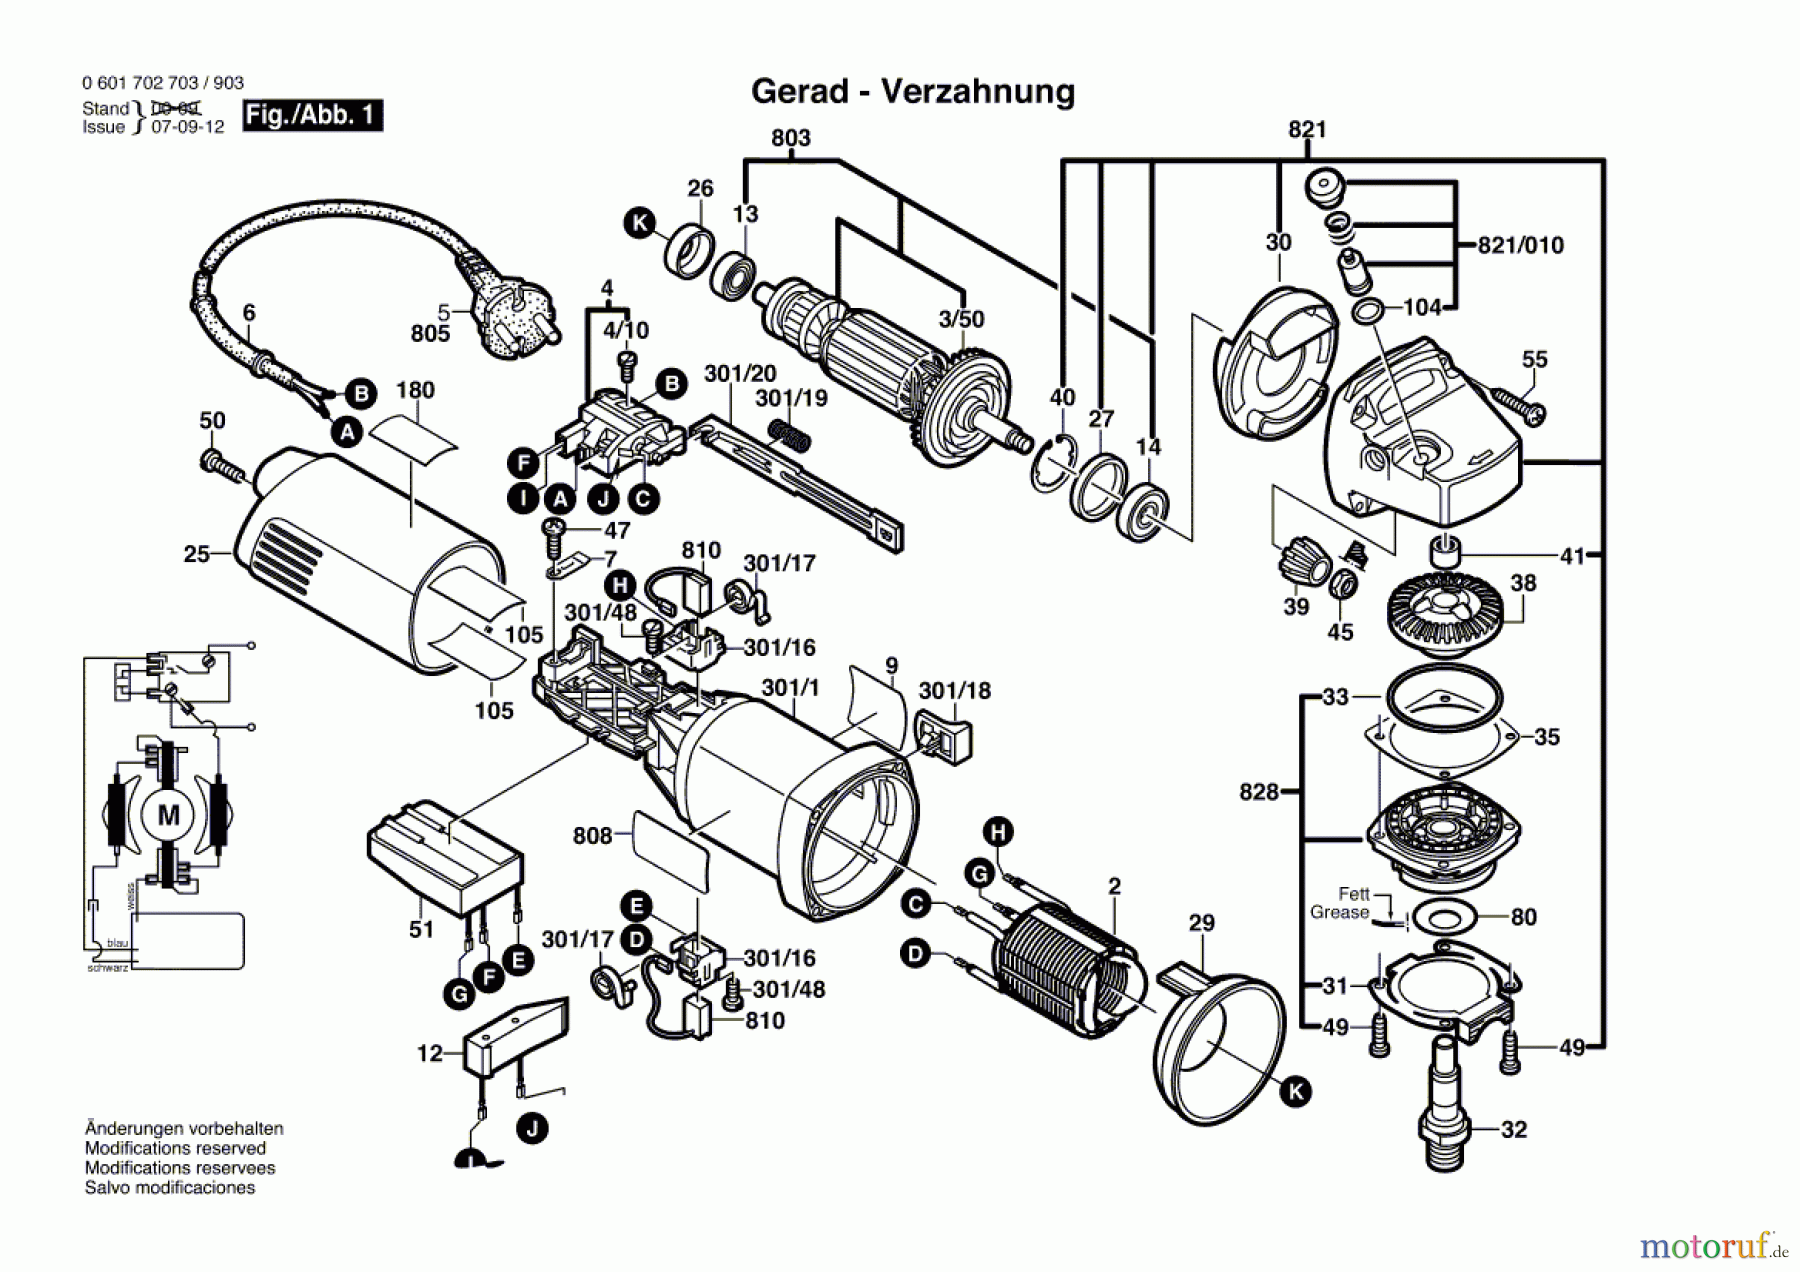  Bosch Werkzeug Winkelschleifer GWS 10-125 C Seite 1